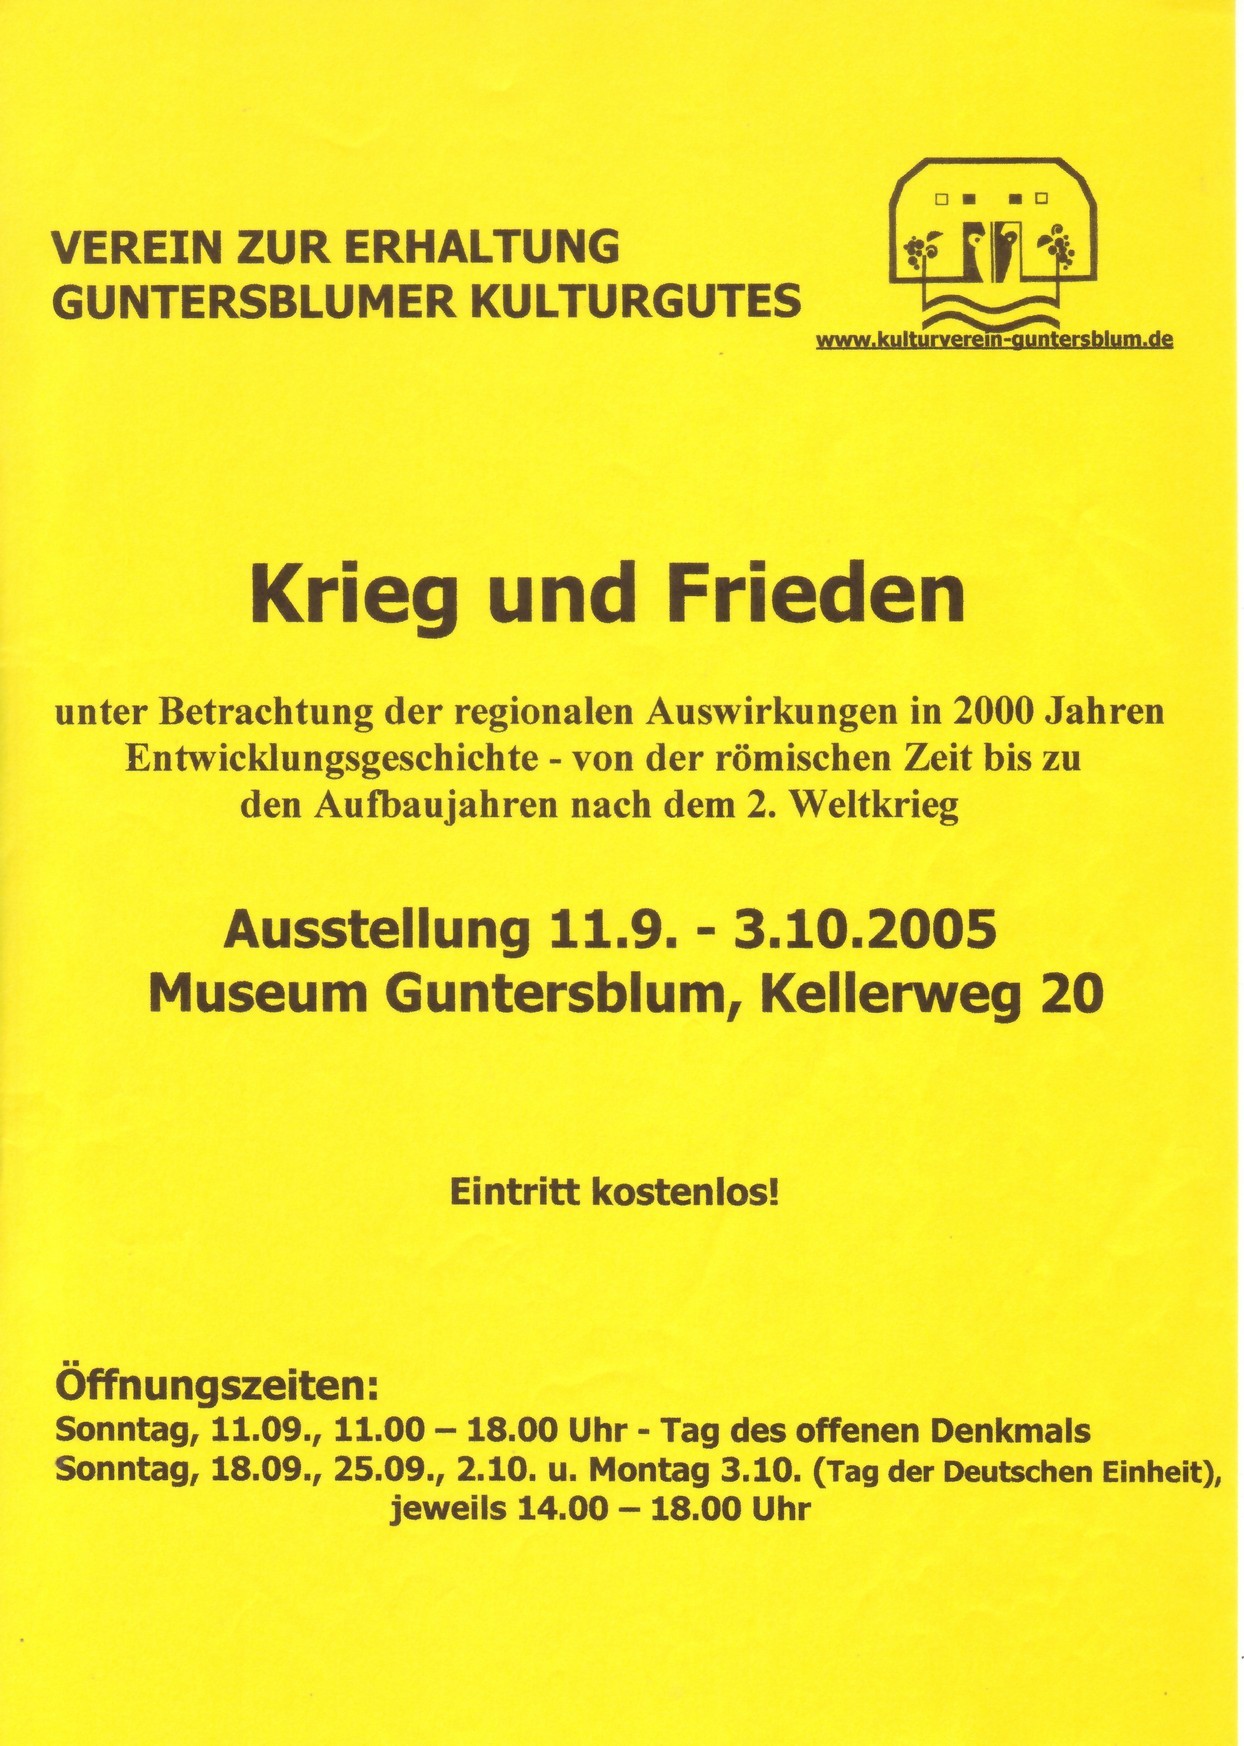 Dokumentation zur Ausstellung Krieg und Frieden (Kulturverein Guntersblum CC BY-NC-SA)